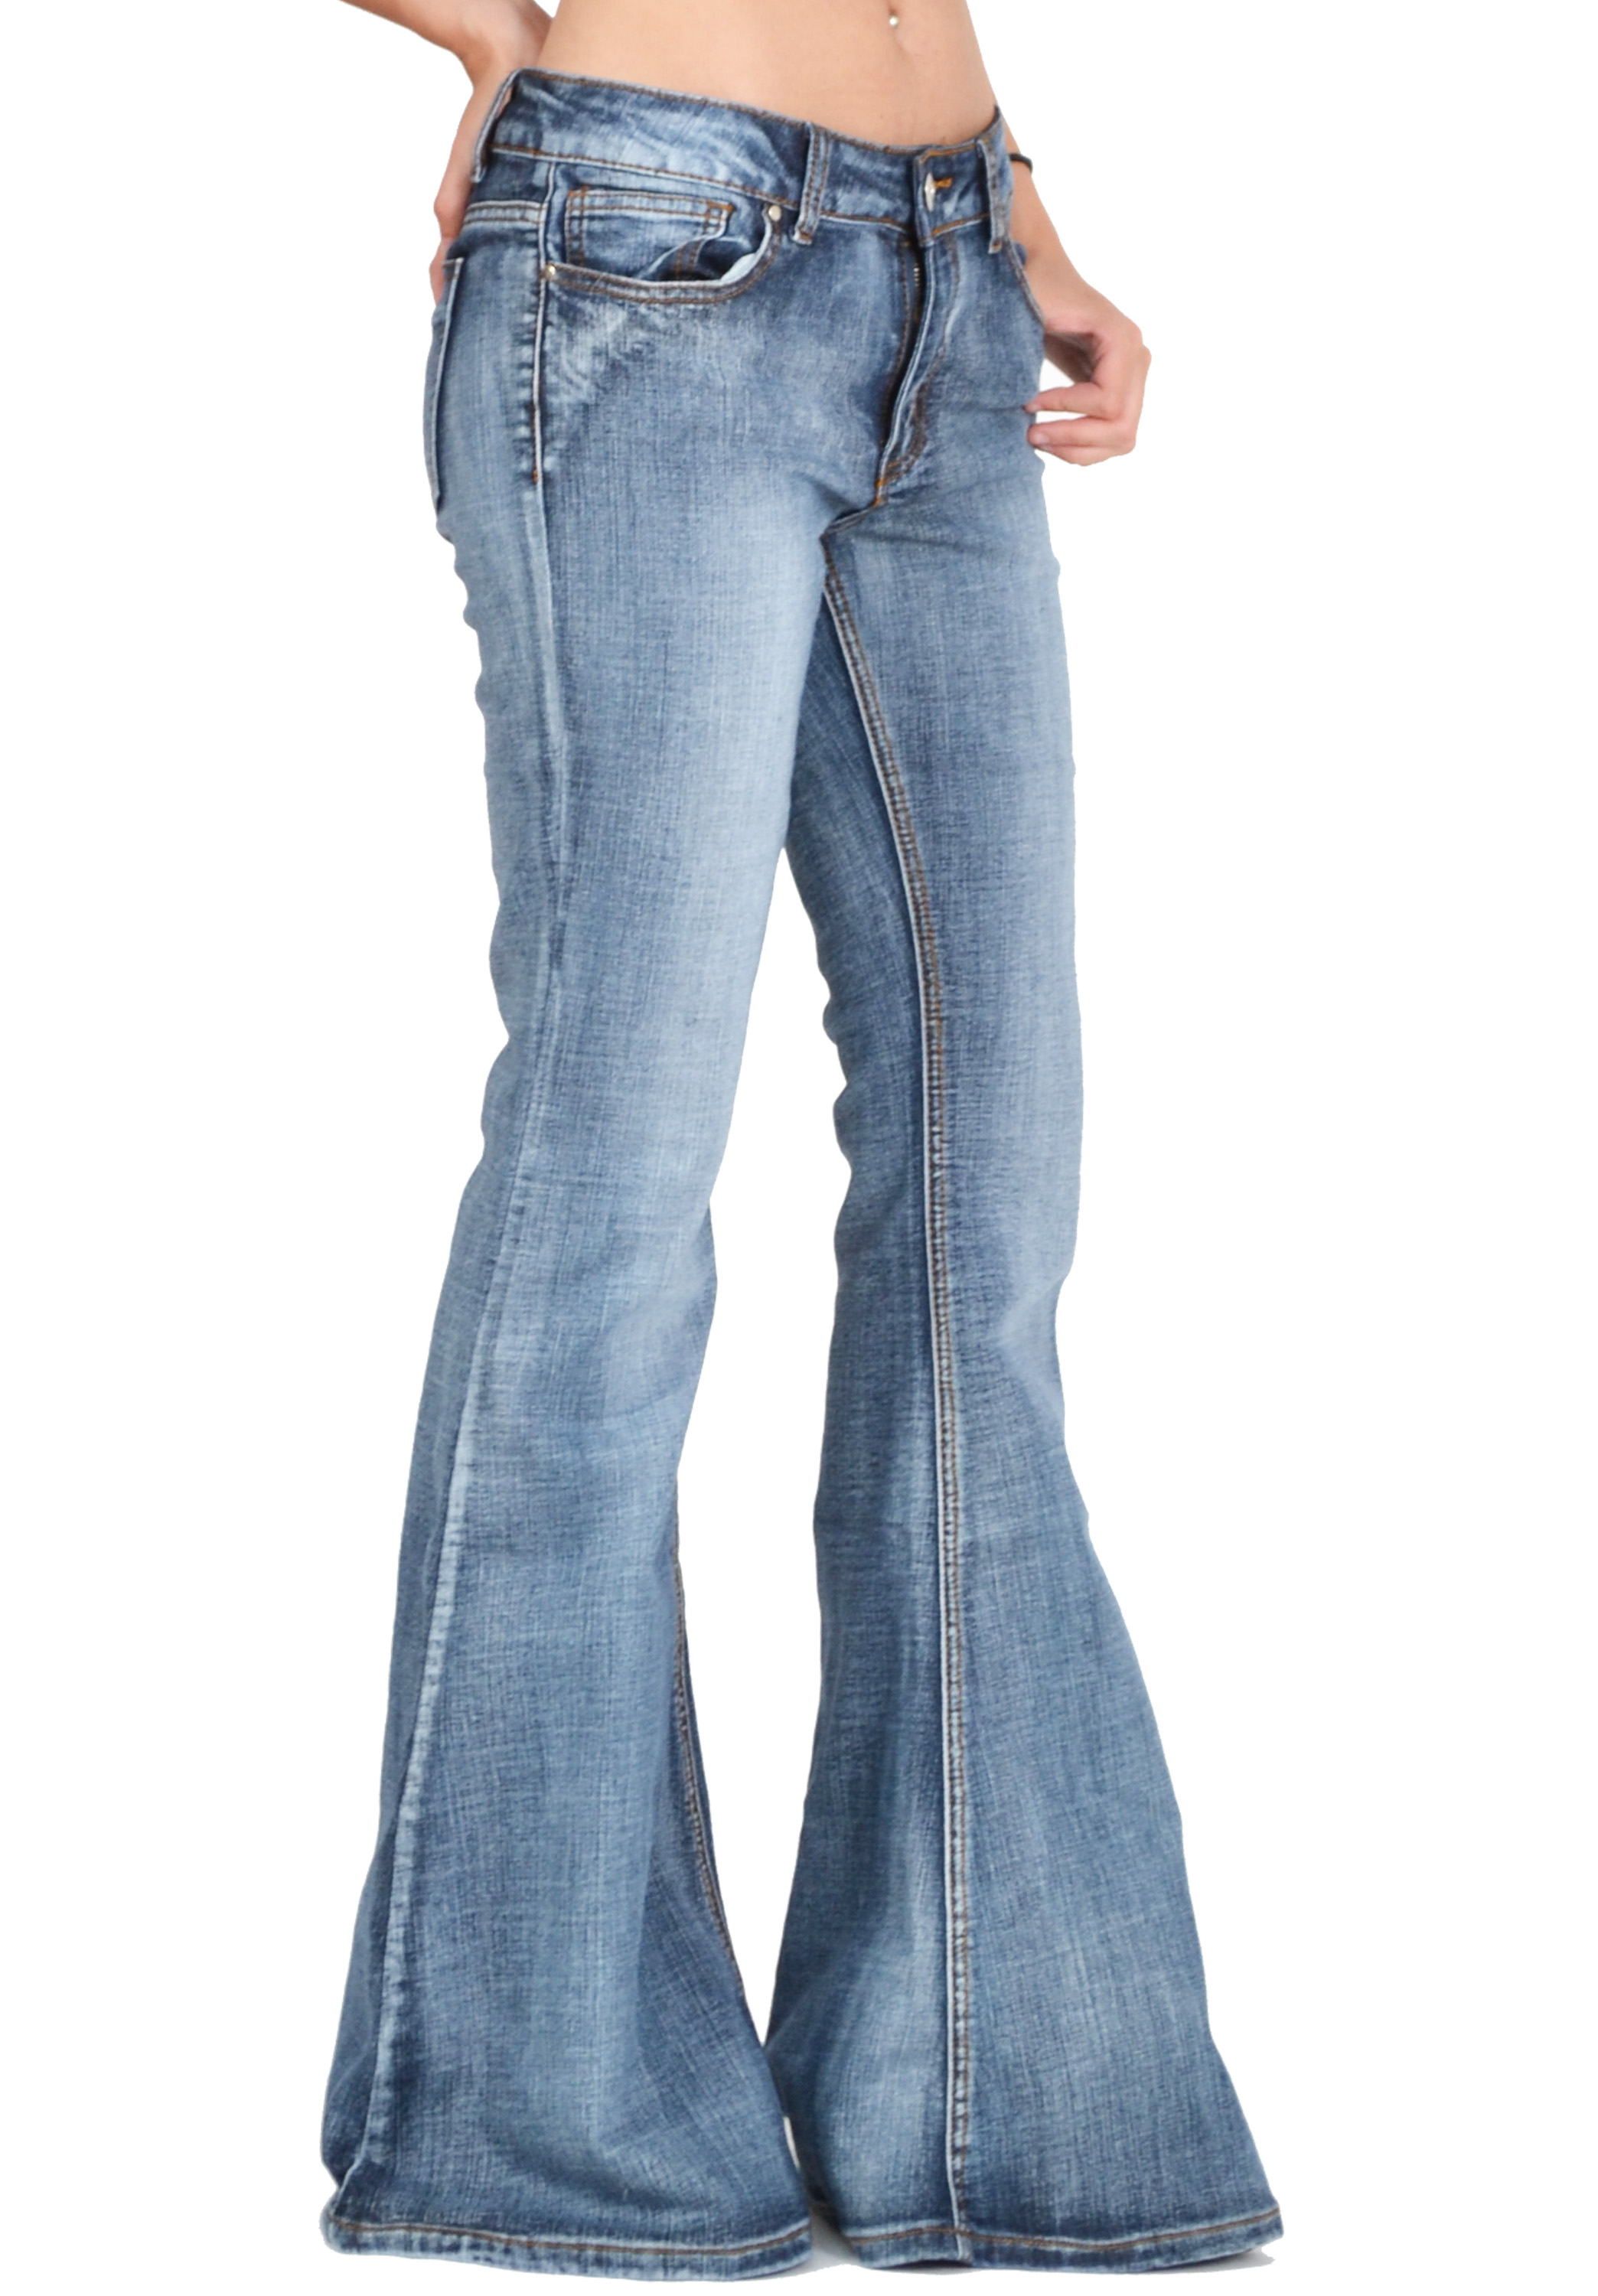 Flared jeans for women flares JXIRHJH